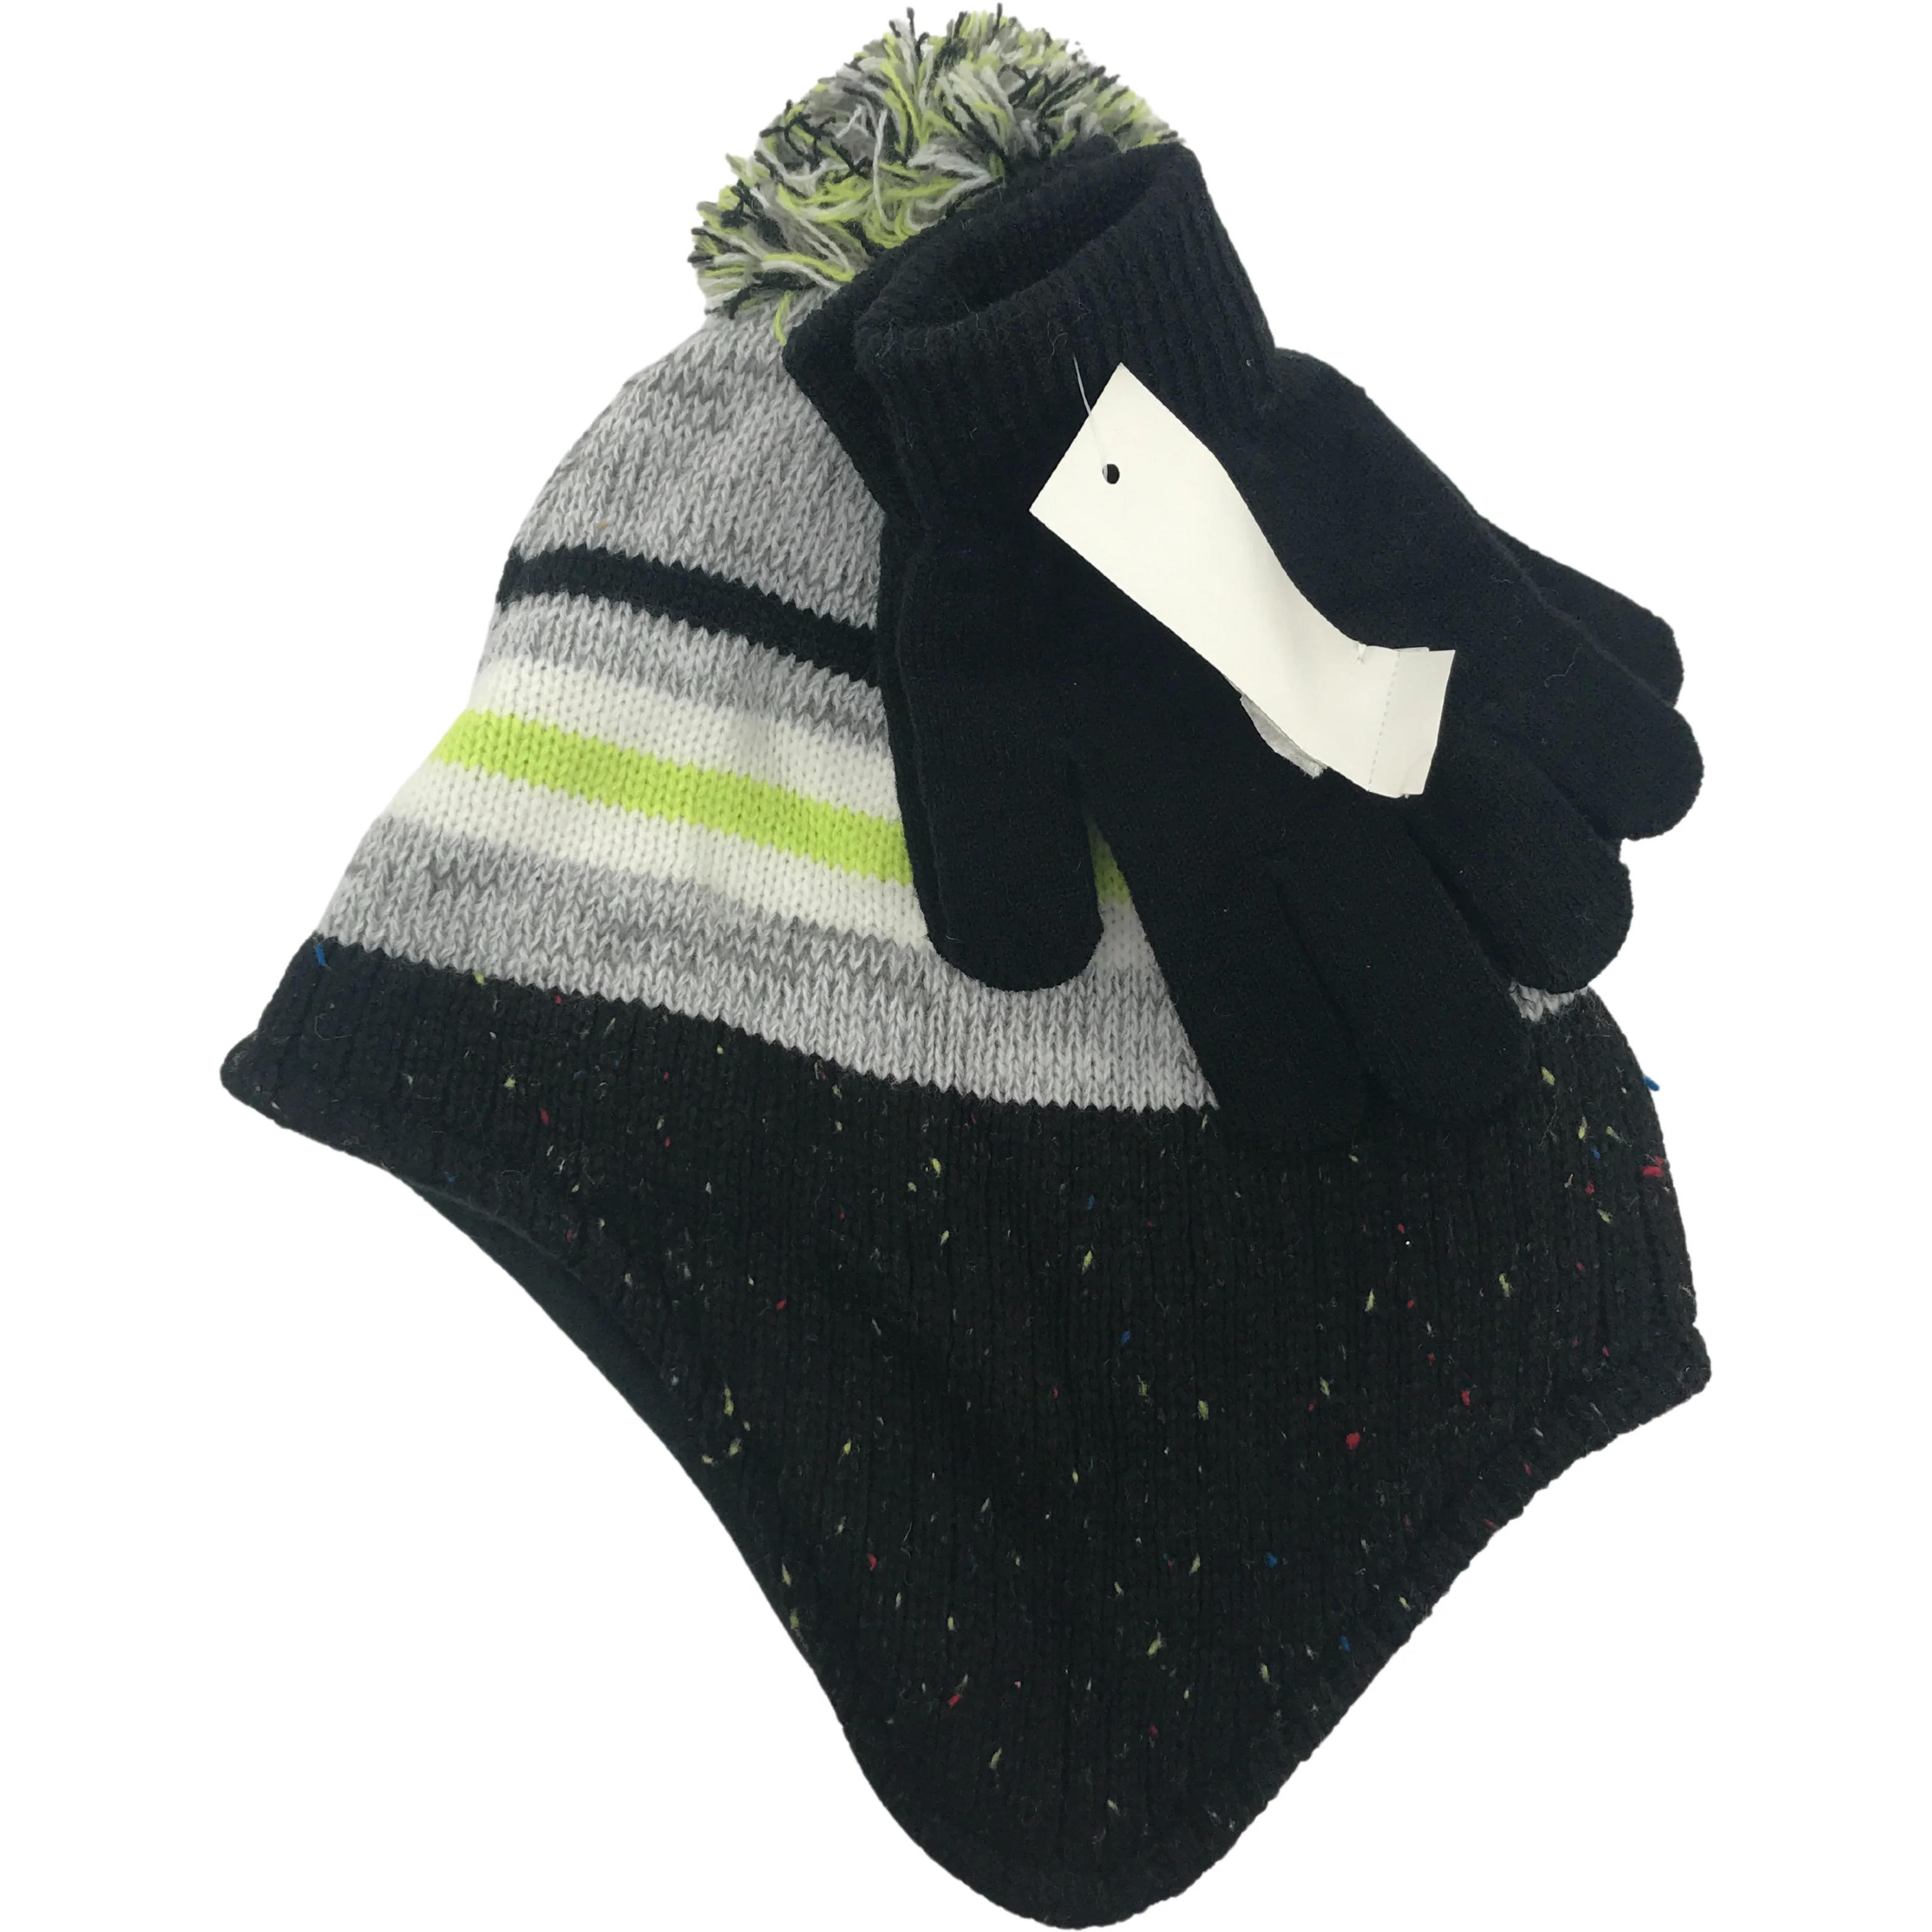 Children's Winter Hat & Glove Set / Boy's Toque / White, Grey, & Black / Size 8-20